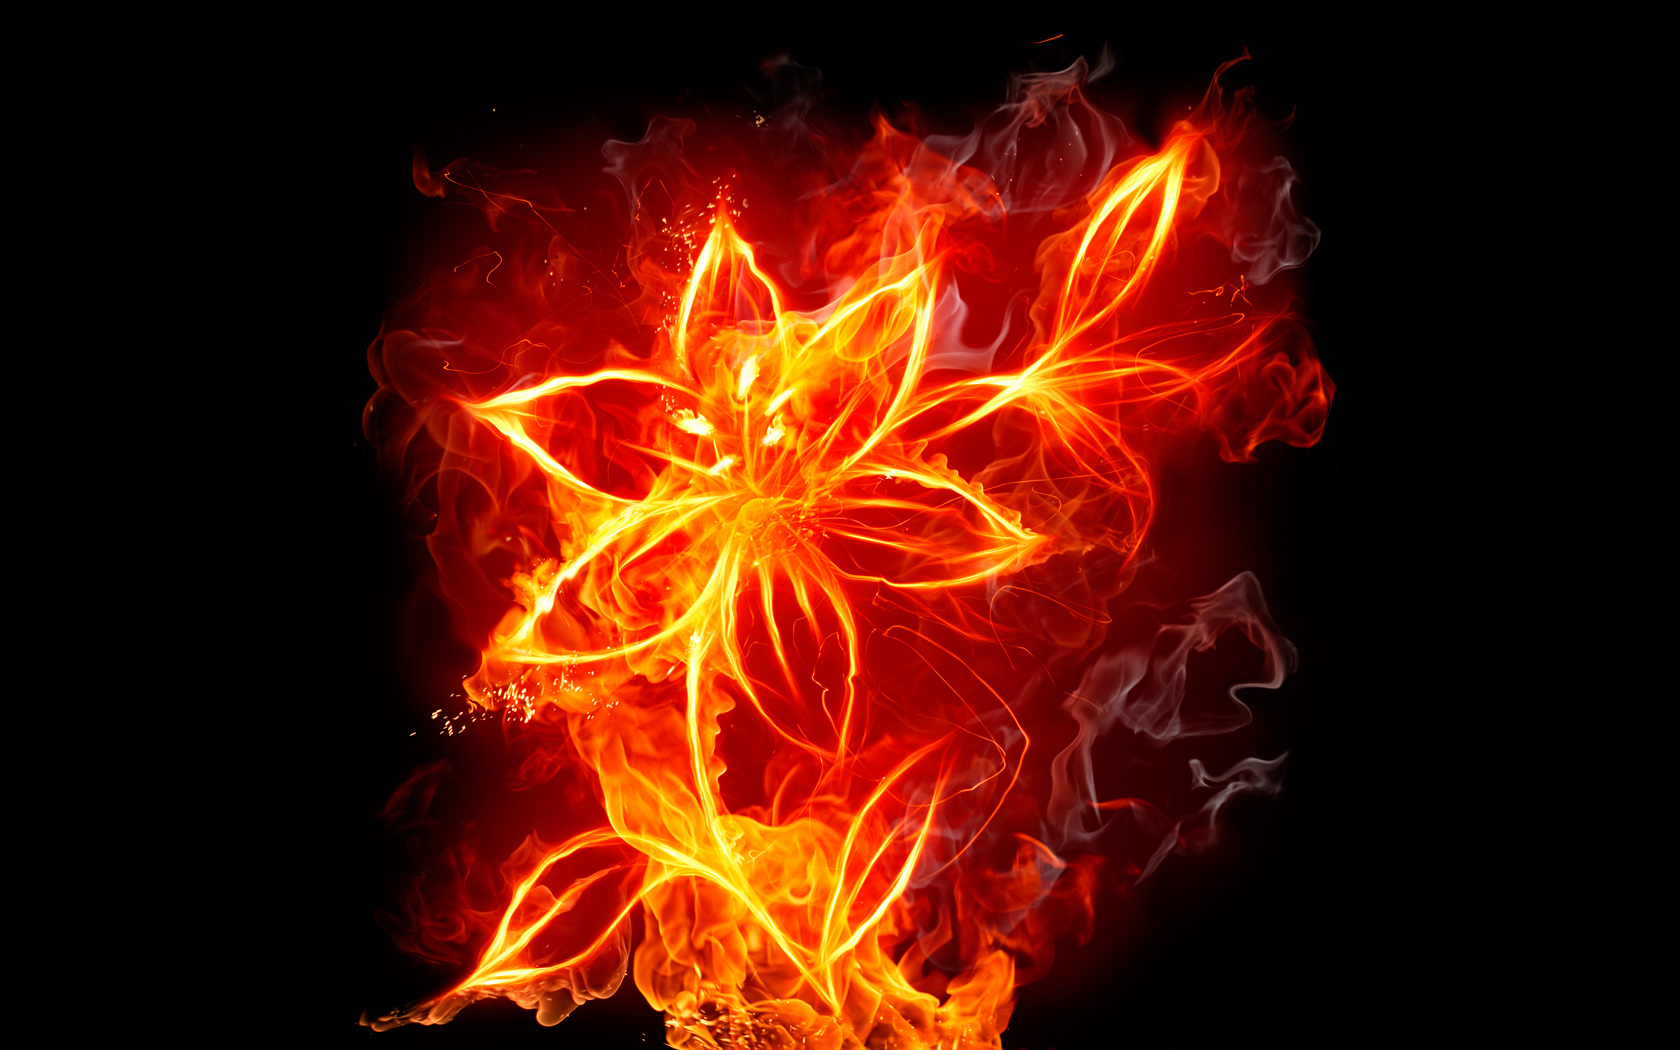 Fire Flower Computer Wallpapers, Desktop Backgrounds | 1680x1050 ...